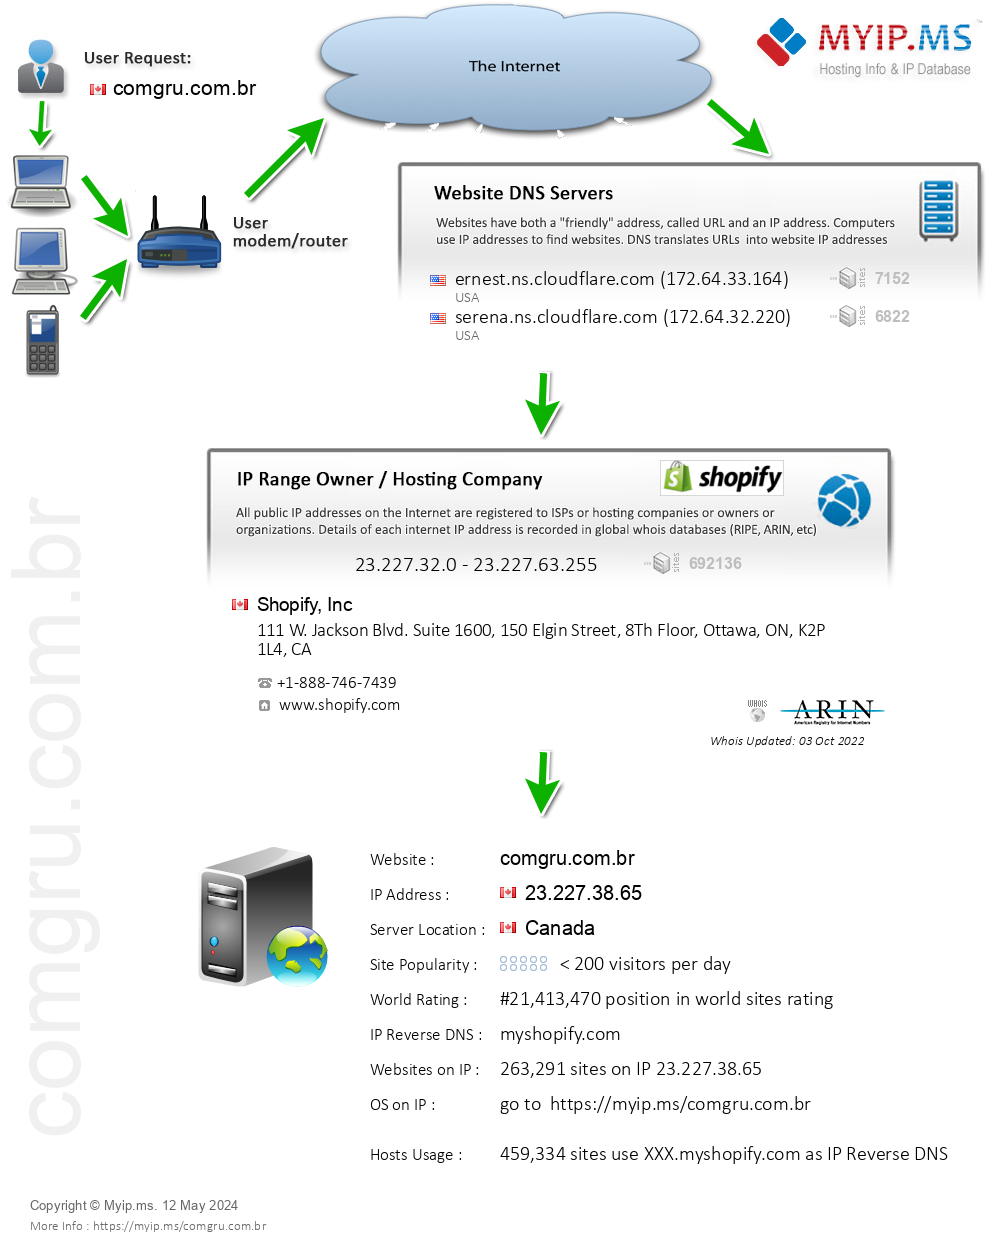 Comgru.com.br - Website Hosting Visual IP Diagram